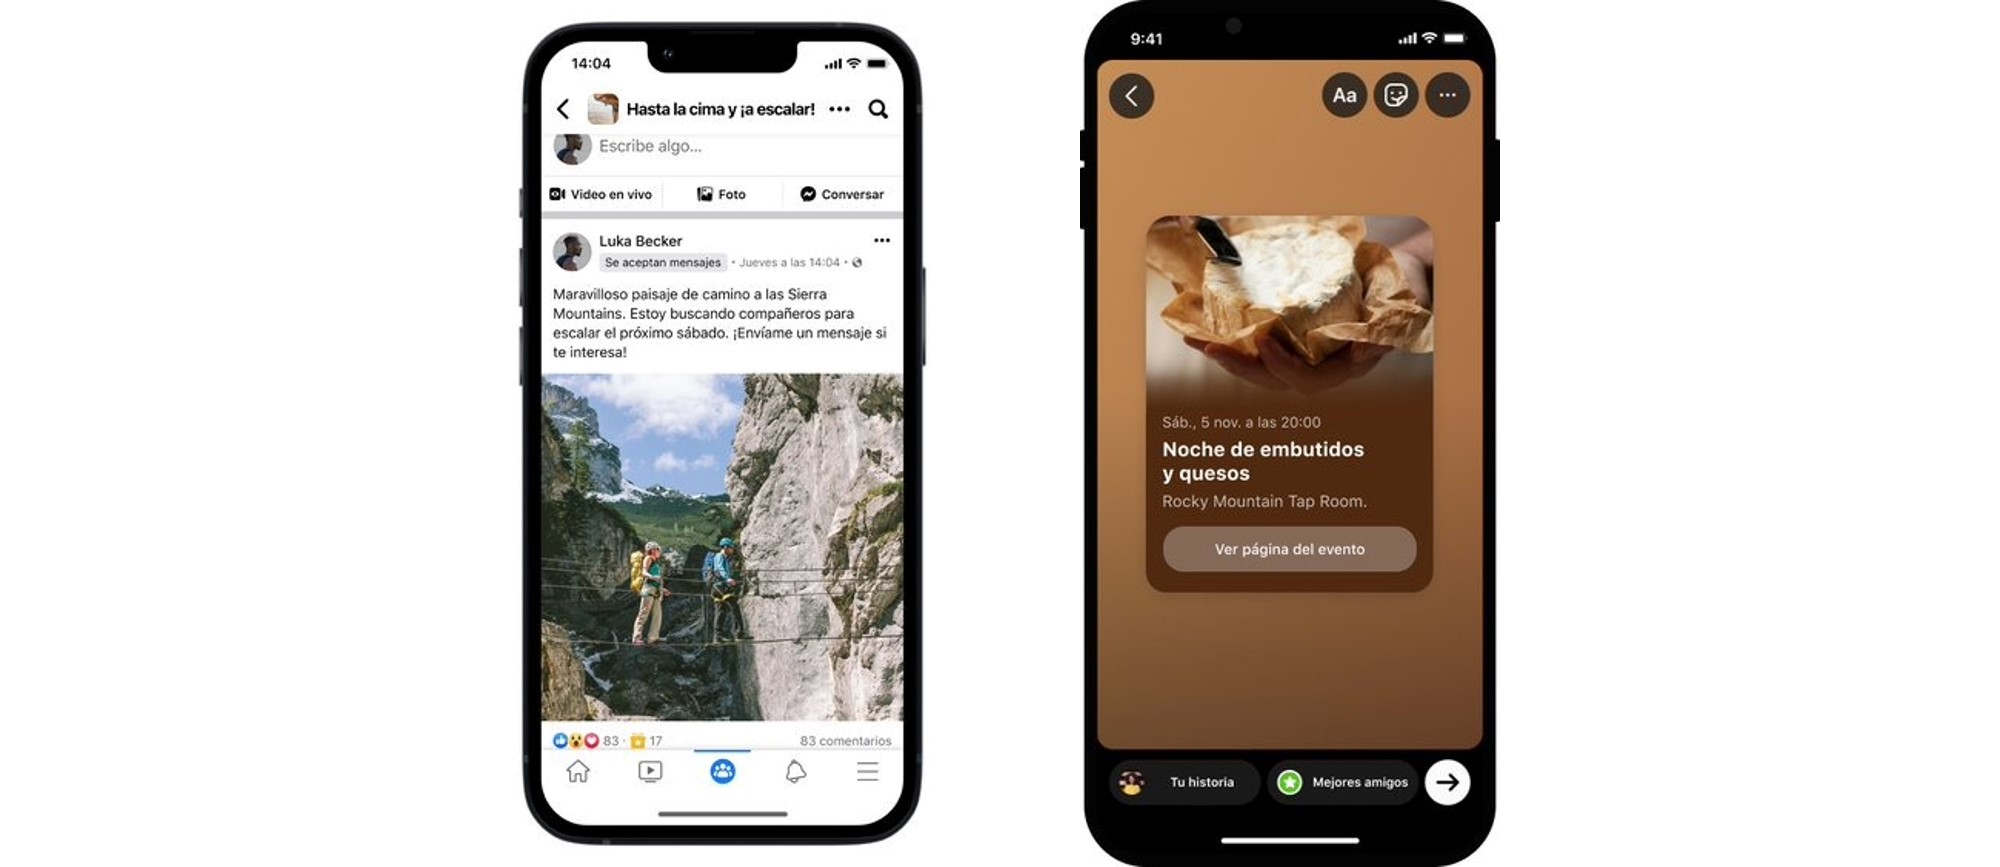 La nueva actualización de grupos de Facebook permite que los usuarios compartan eventos en Instagram e informar si están disponibles para conversaciones por mensajes directos (Meta)